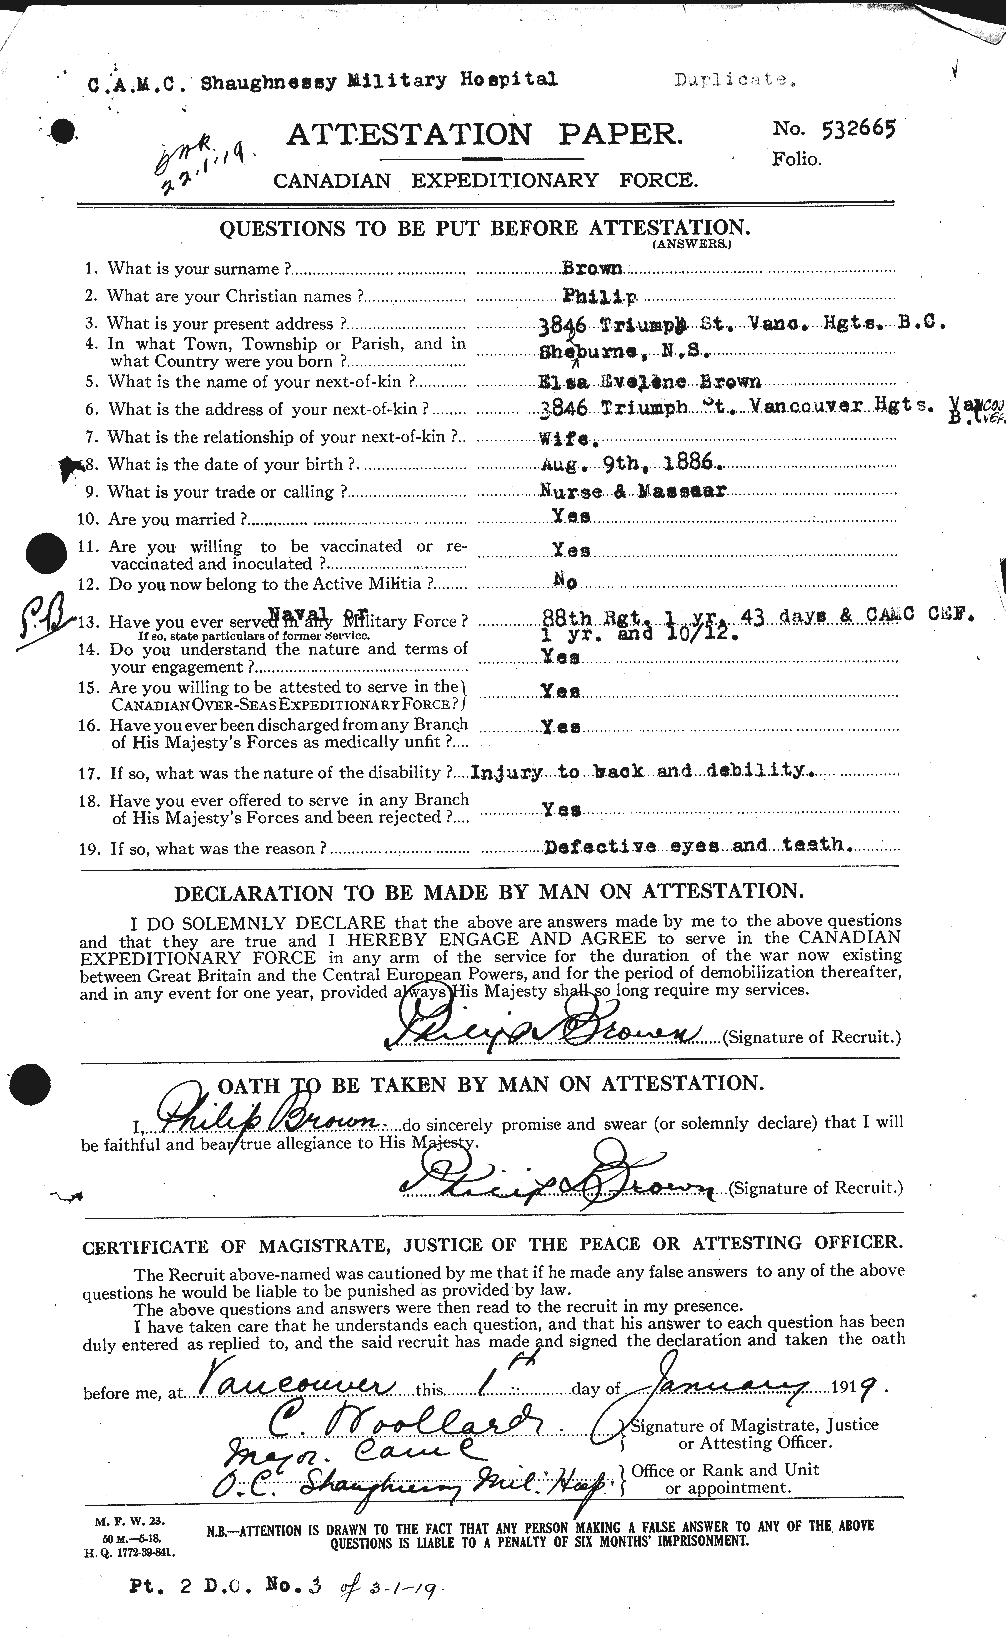 Dossiers du Personnel de la Première Guerre mondiale - CEC 267211a